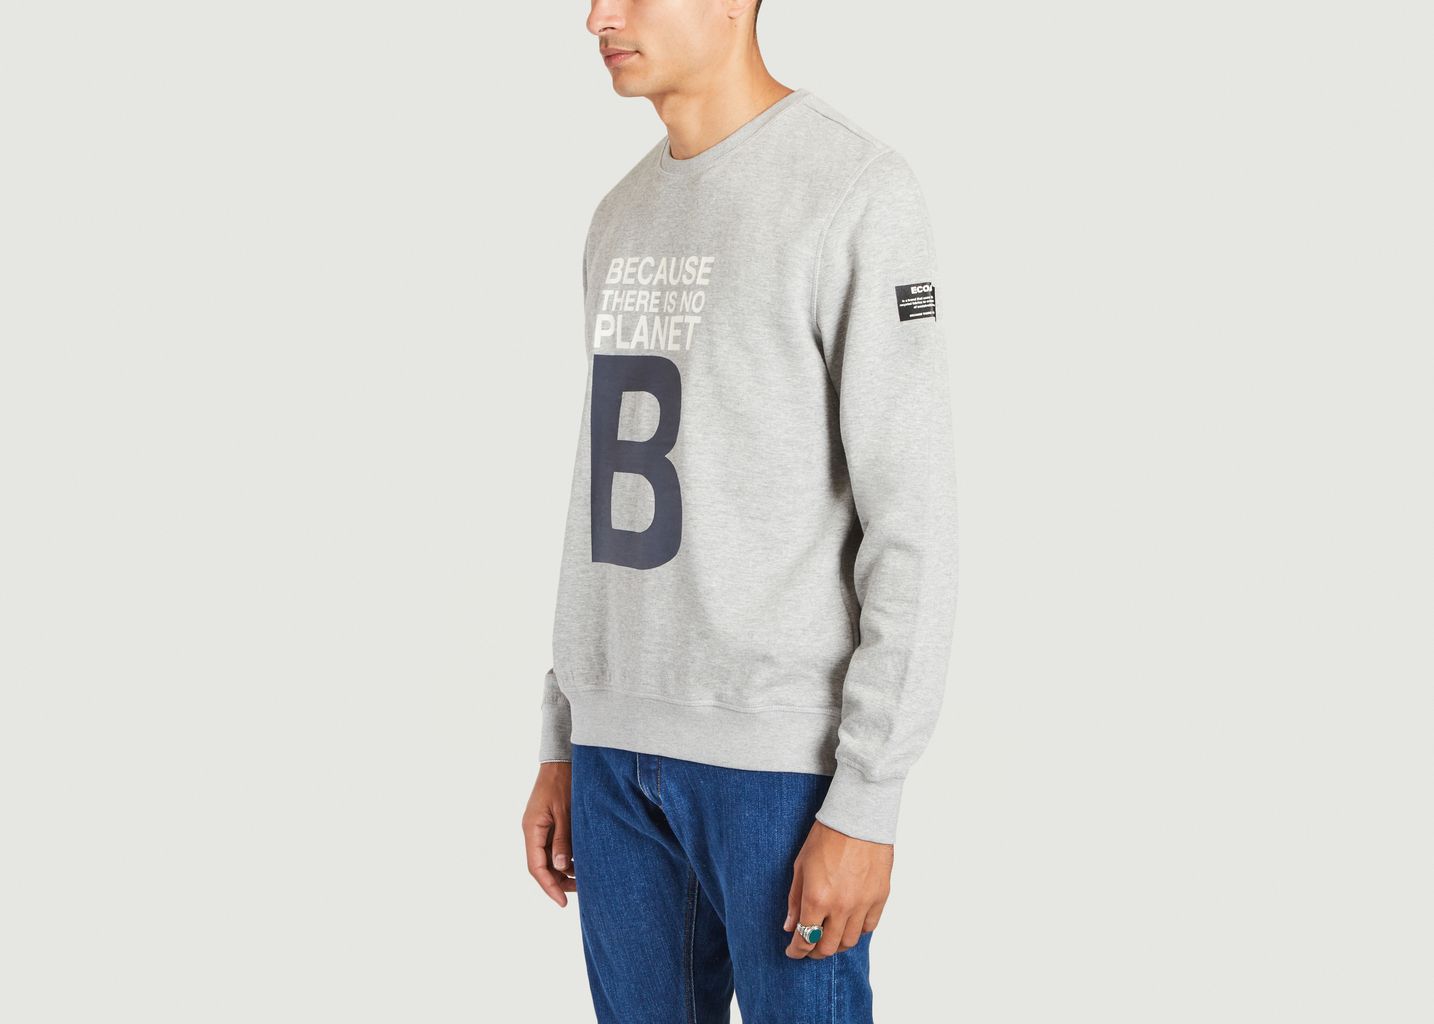 Sweatshirt mit großem B-Schriftzug - Ecoalf